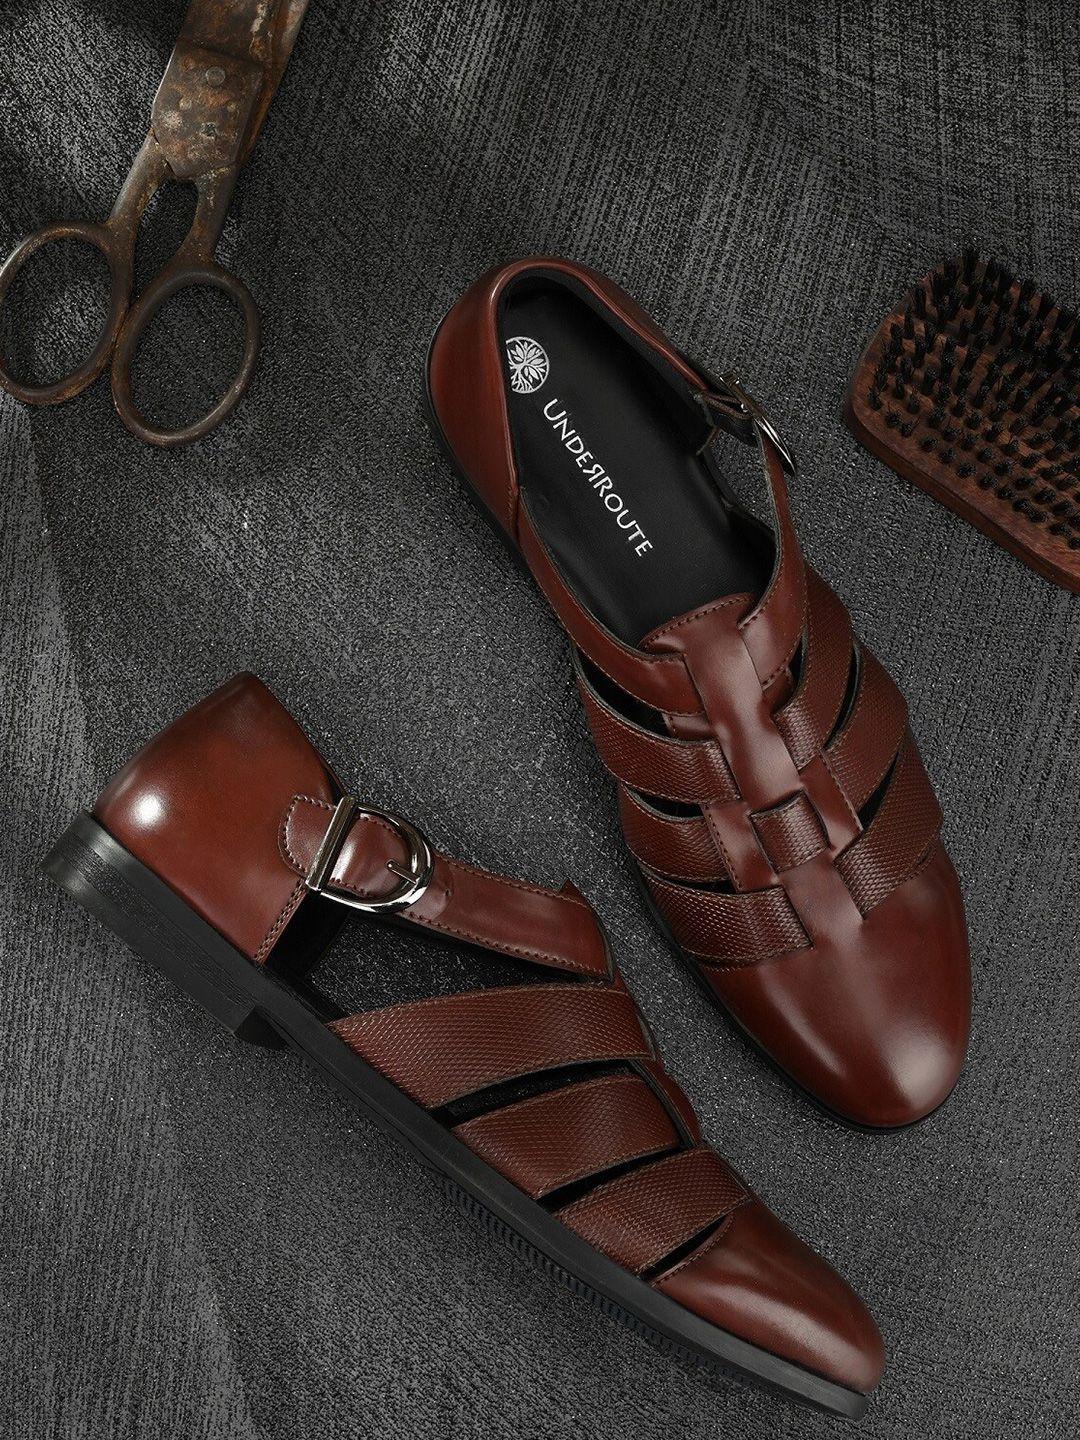 UNDERROUTE Men Burgundy Shoe-Style Sandals